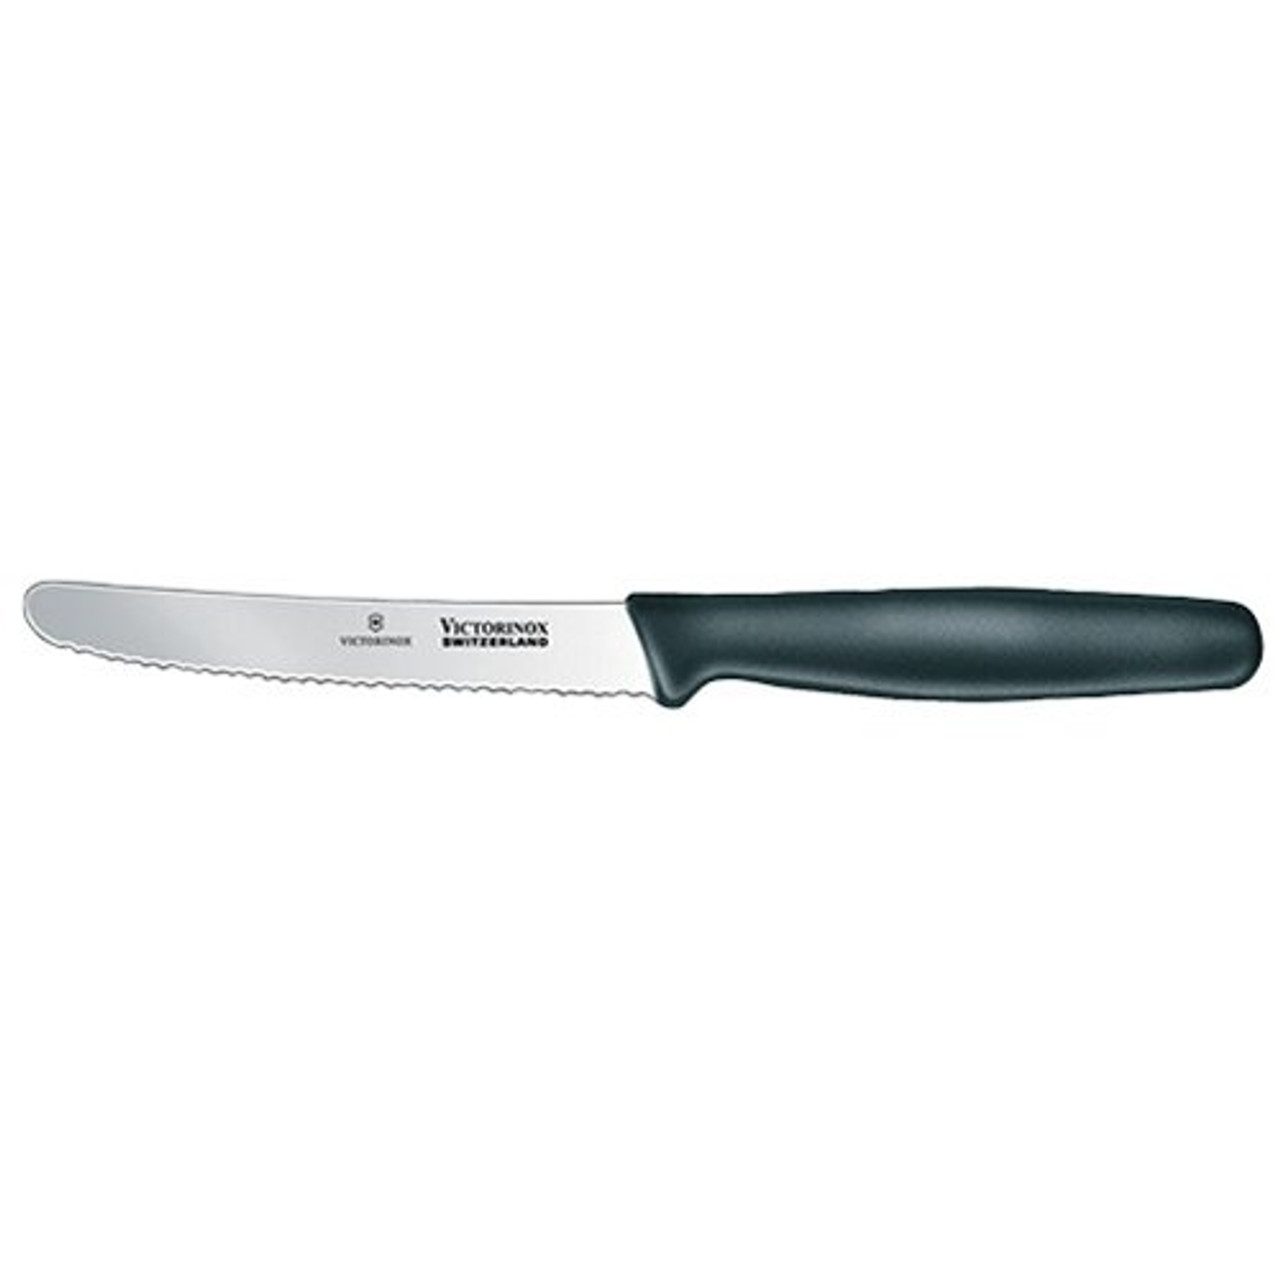 Victorinox 4 1/2 Steak Knife - Wavy, Round Tip - DLT Trading